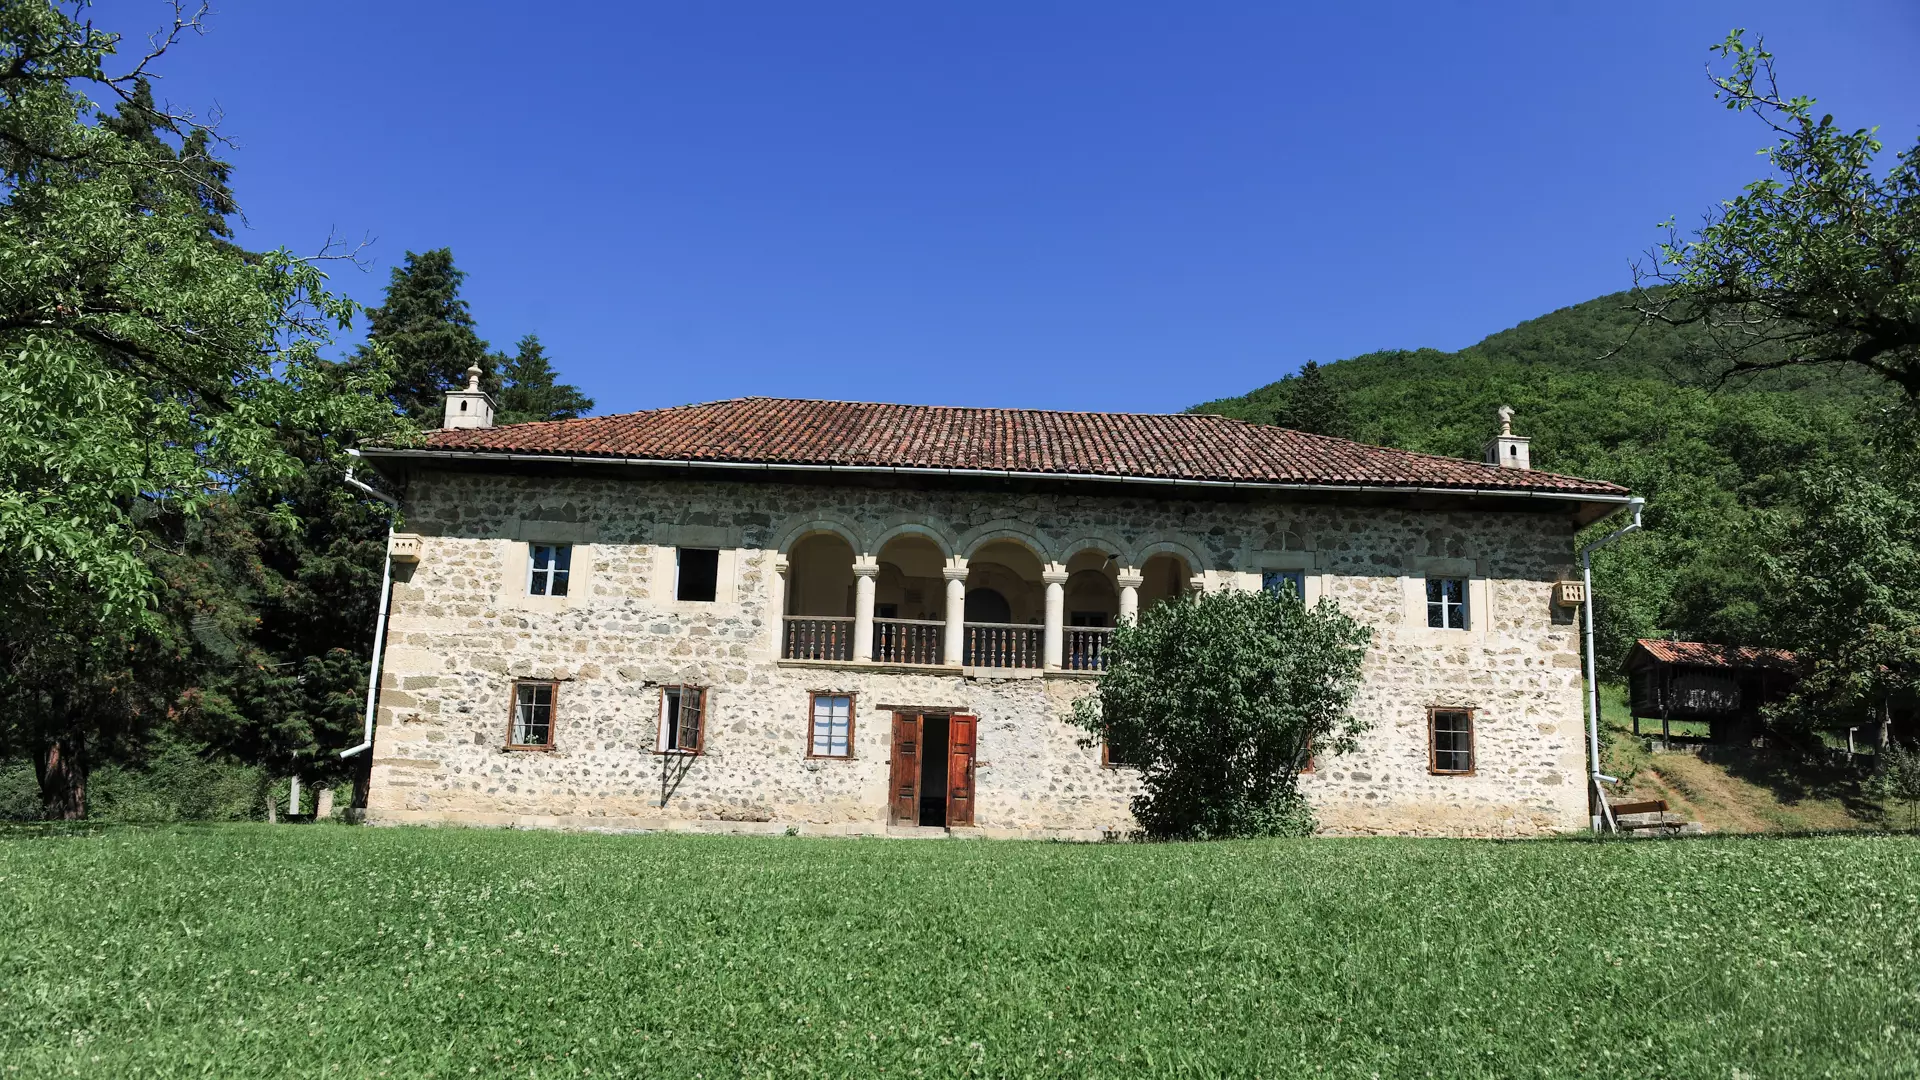 Akaki Tsereteli House-Museum in Skhvitori